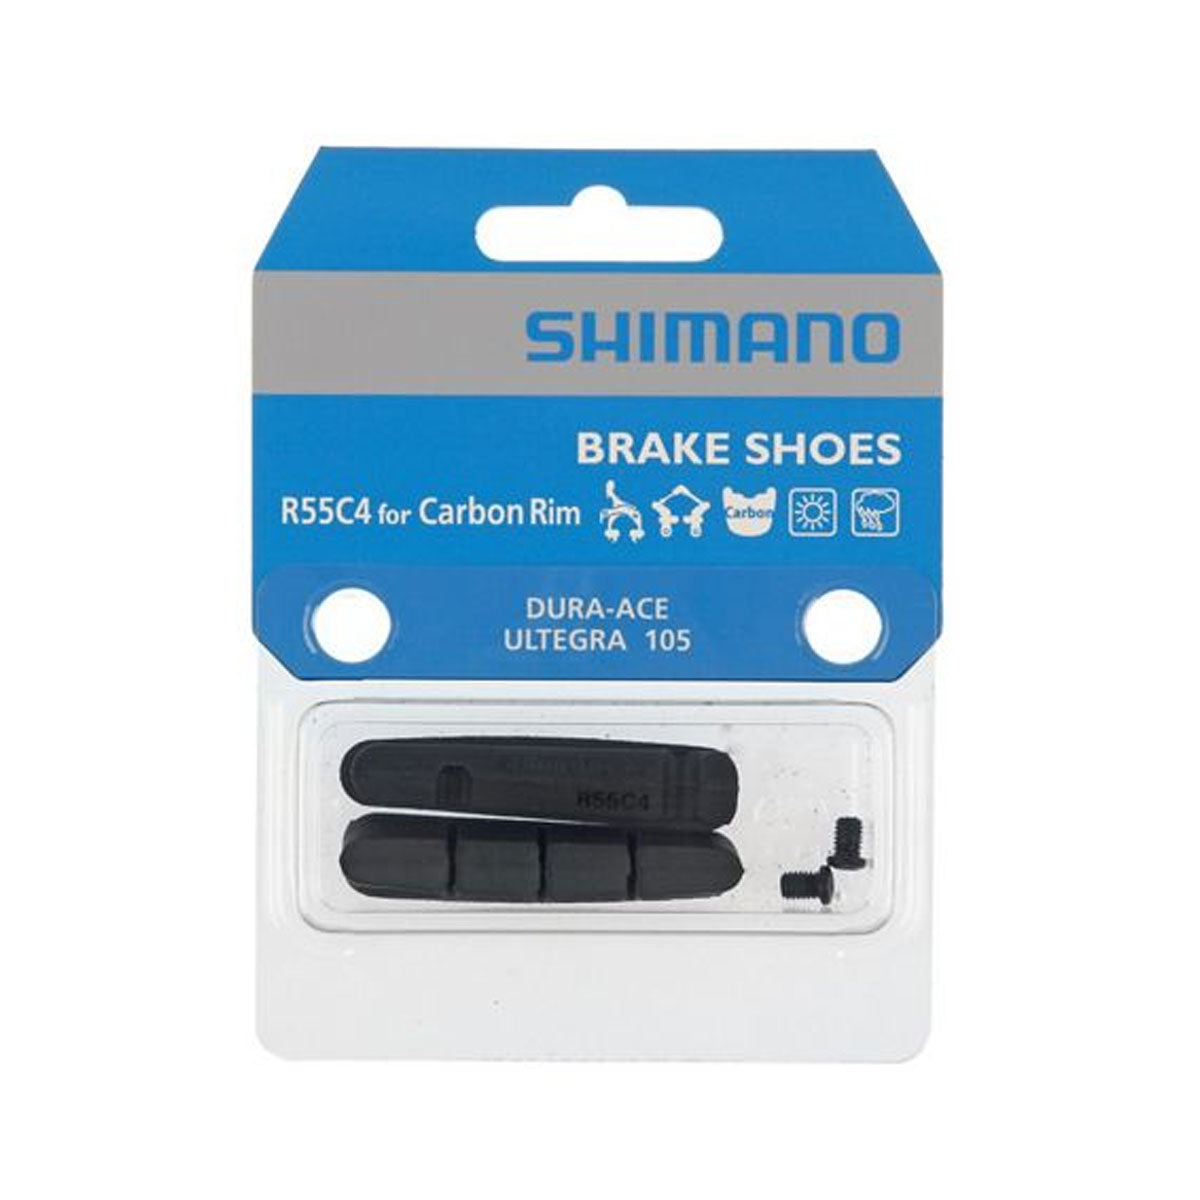 R55C4 Brake Shoes (1 pair)